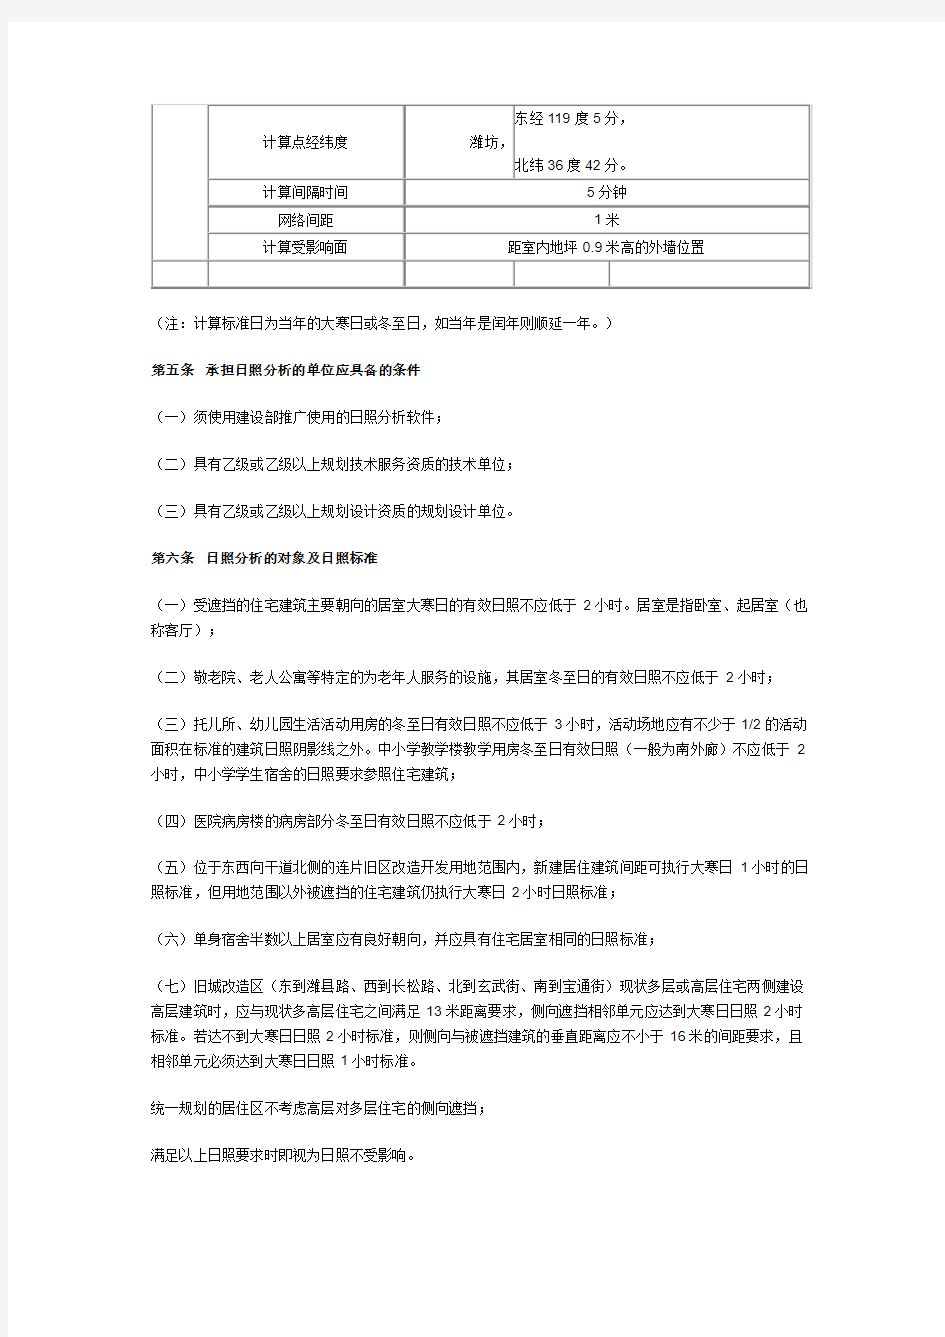 潍坊市日照分析技术管理暂行规定